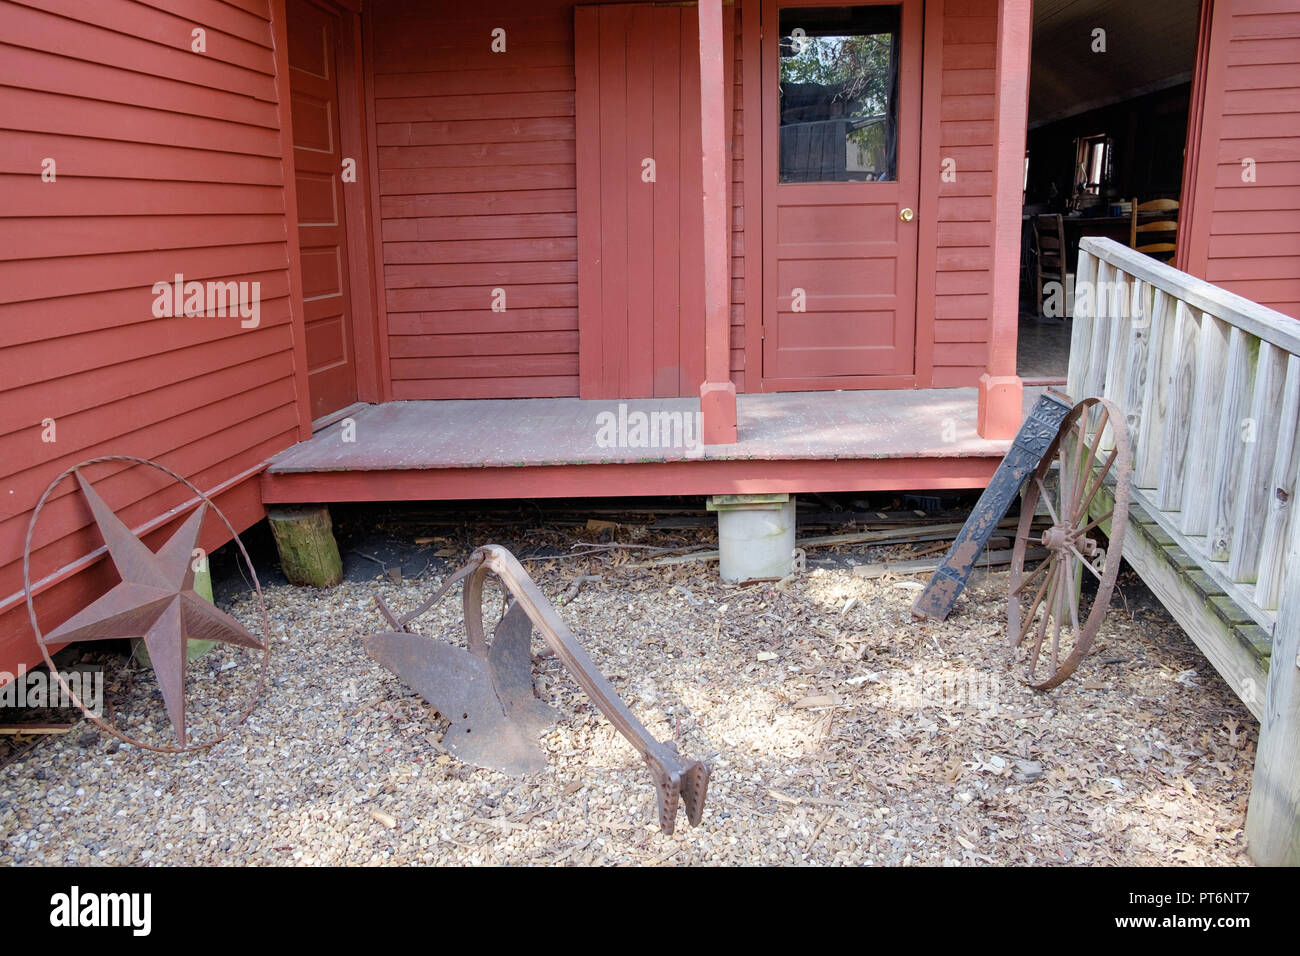 Atrás de la vieja casa de madera, de color rojo. Two-Bit Taylor Inn con hierro Texas Star, & viejo vagón de la rueda. Puerta abierta. Plaza de castaños Villa Histórica, McKinney, Texas. Foto de stock